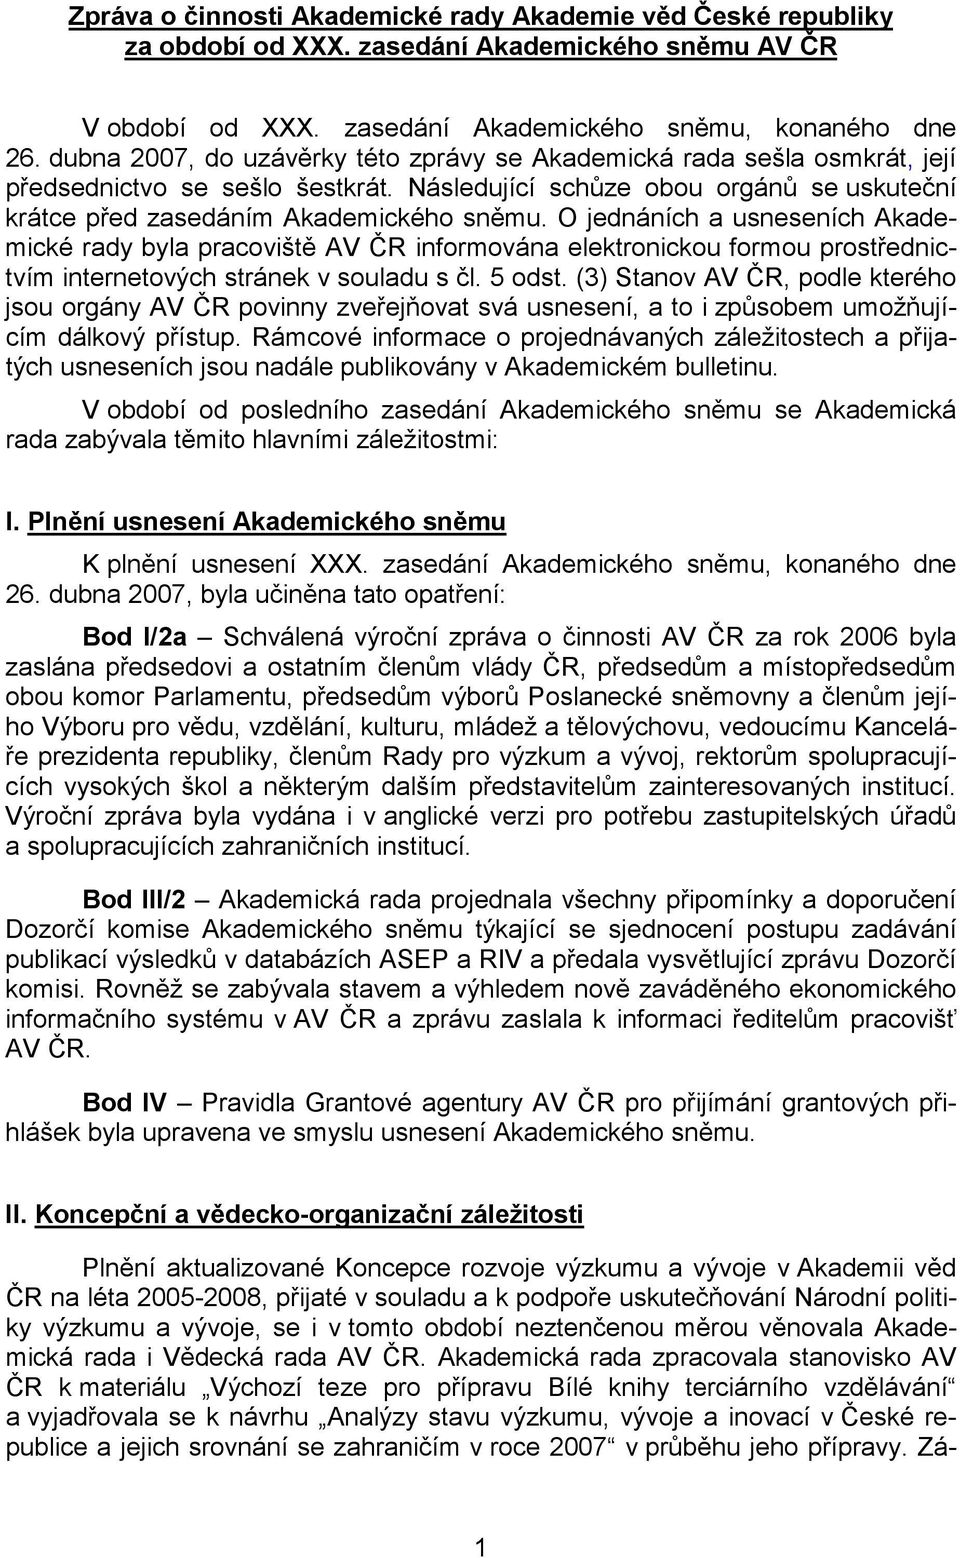 O jednáních a usneseních Akademické rady byla pracoviště AV ČR informována elektronickou formou prostřednictvím internetových stránek v souladu s čl. 5 odst.